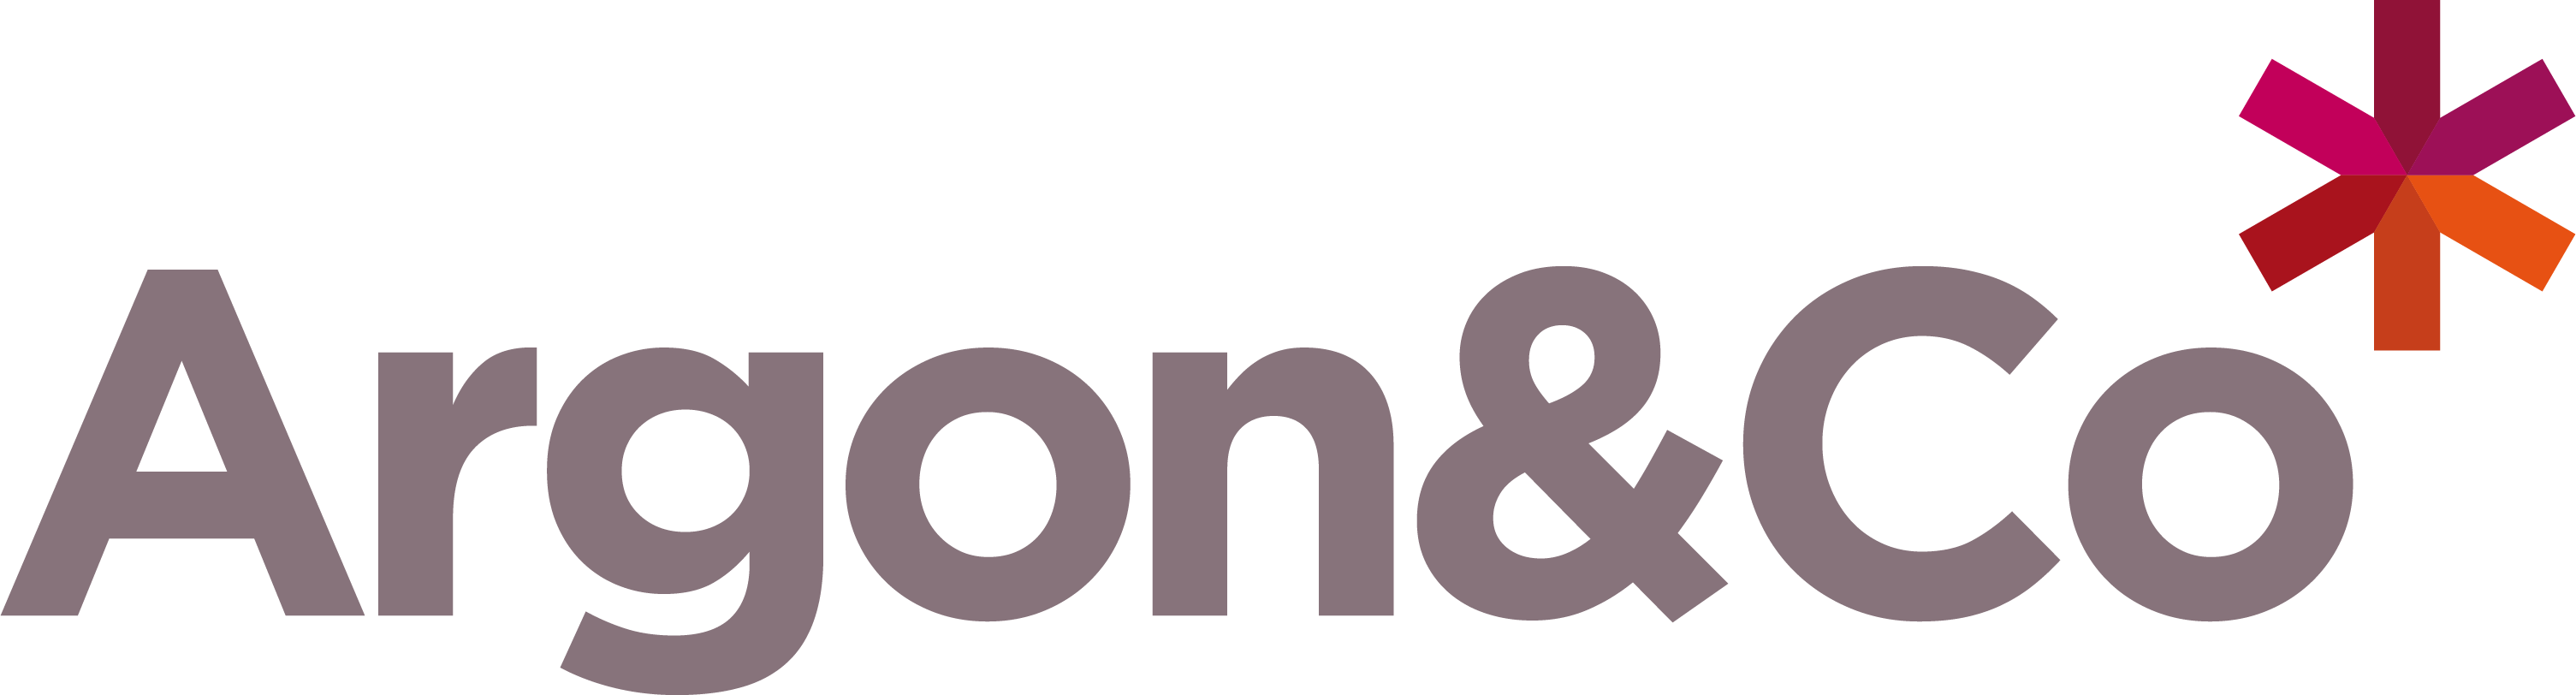 argon_co_logo